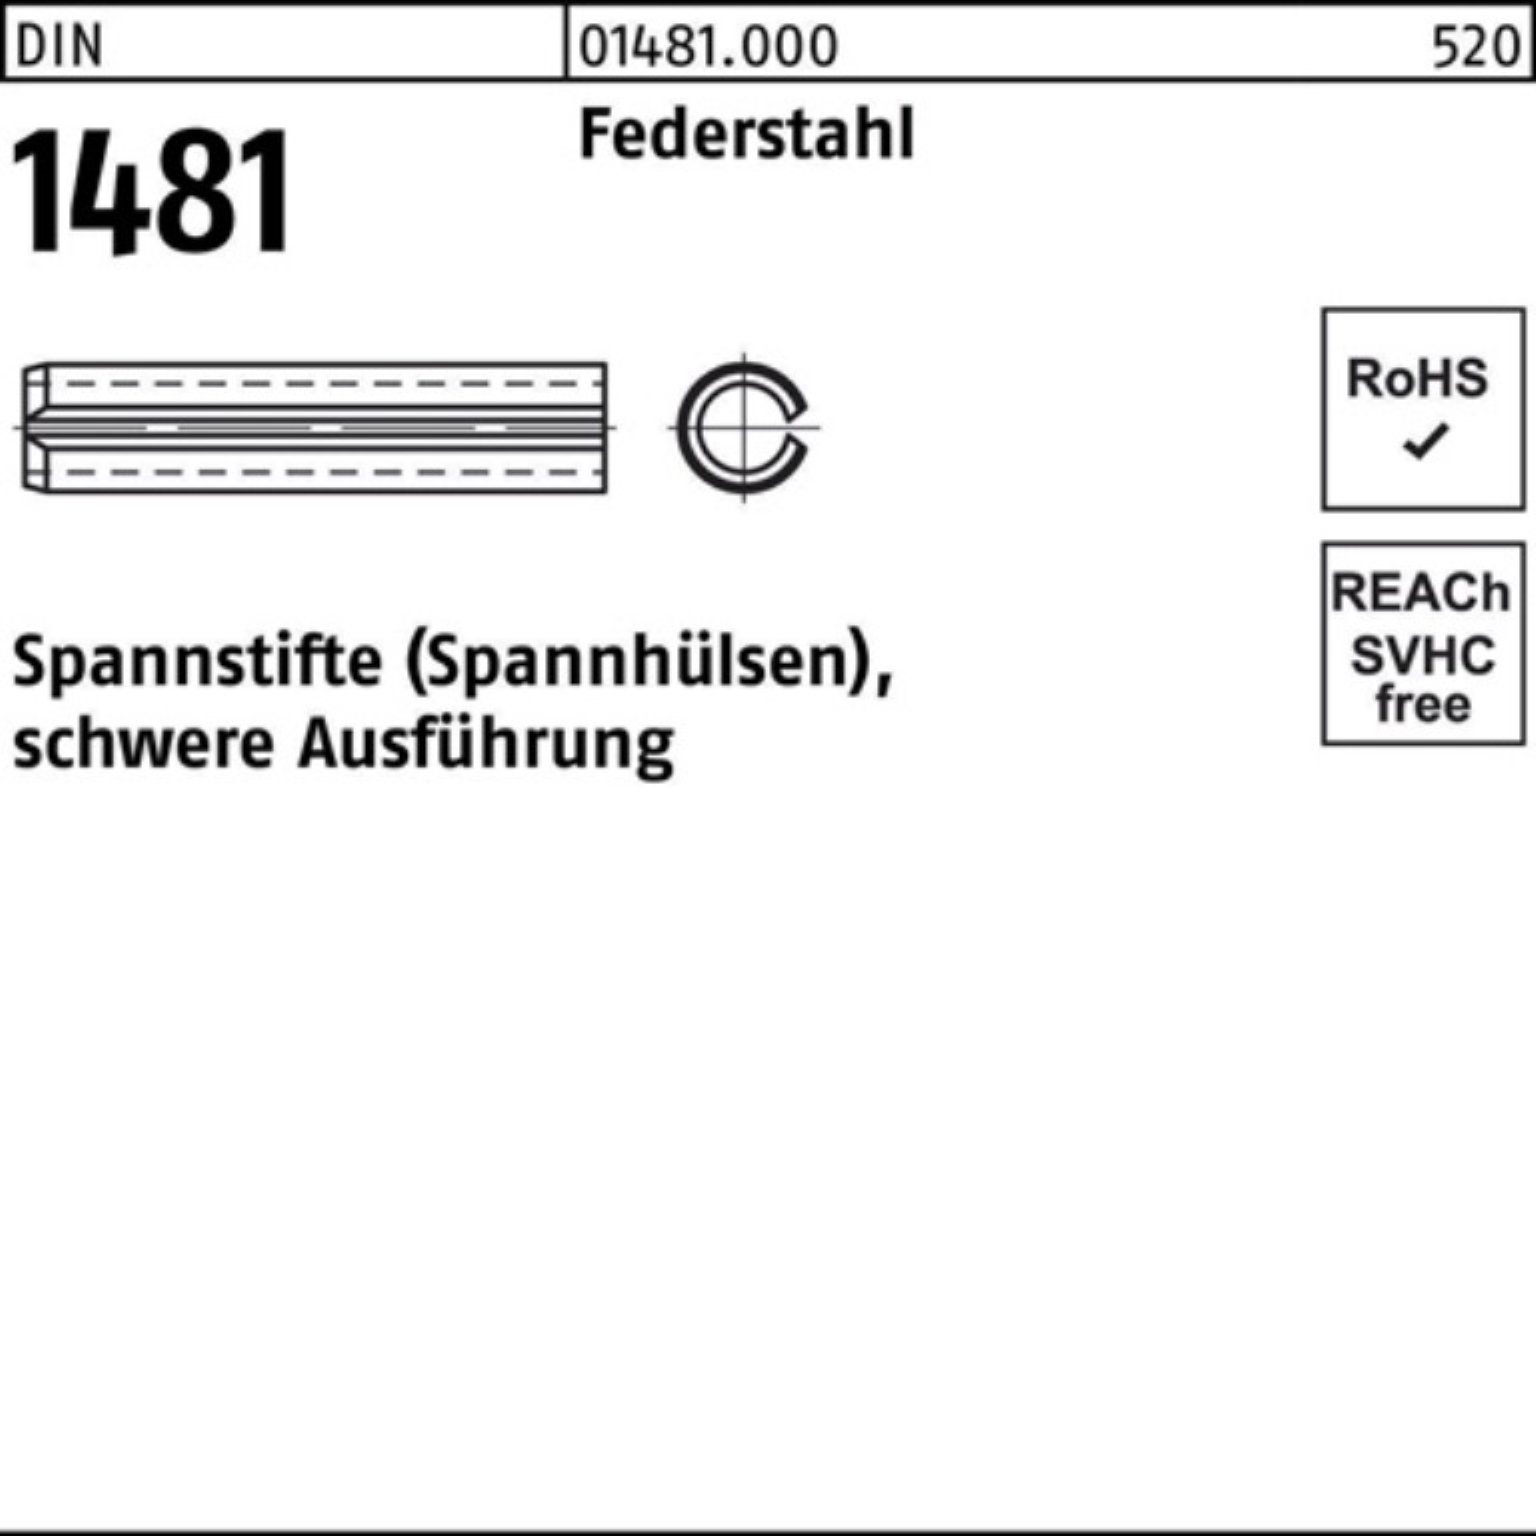 Reyher Spannstift 100er Pack Spannstift DIN 1481 10x 90 Federstahl schwere Ausführung 5